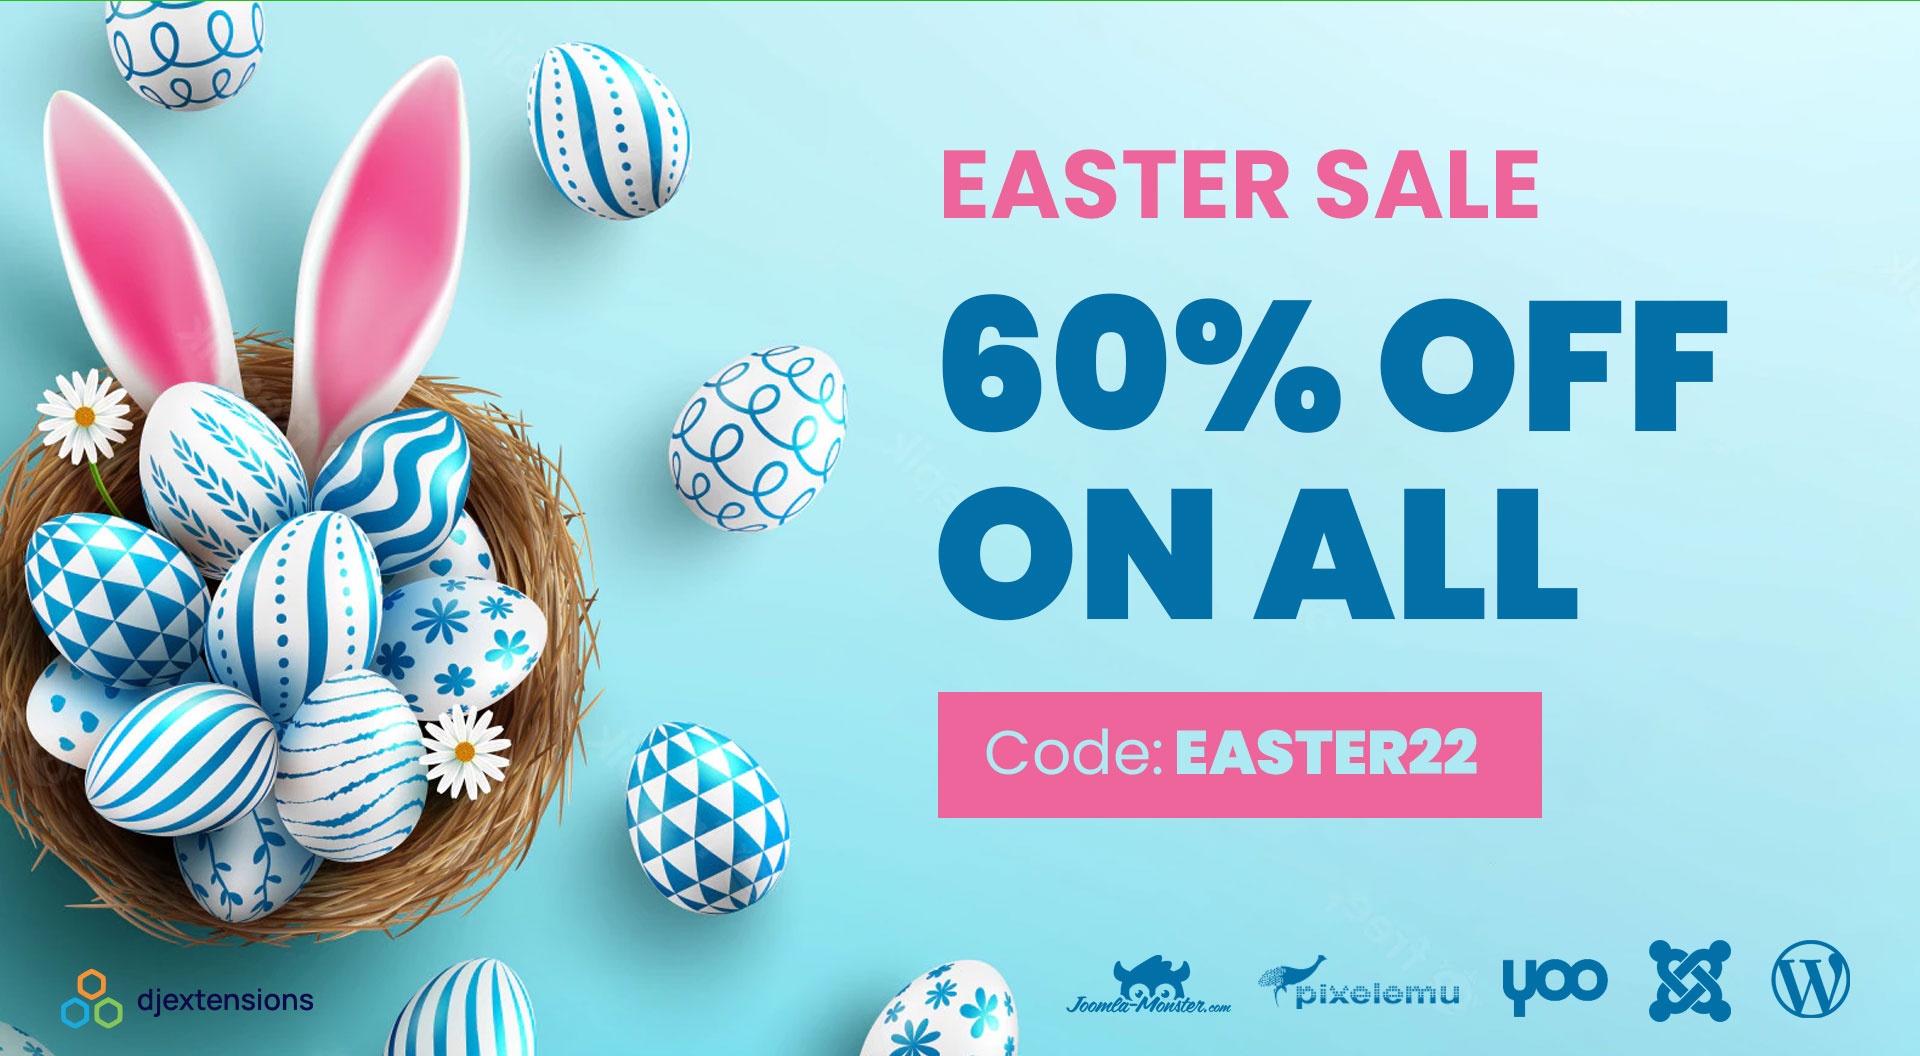 Joomla-Monster Joomla News: Easter Sale -60% OFF on Joomla and WordPress products